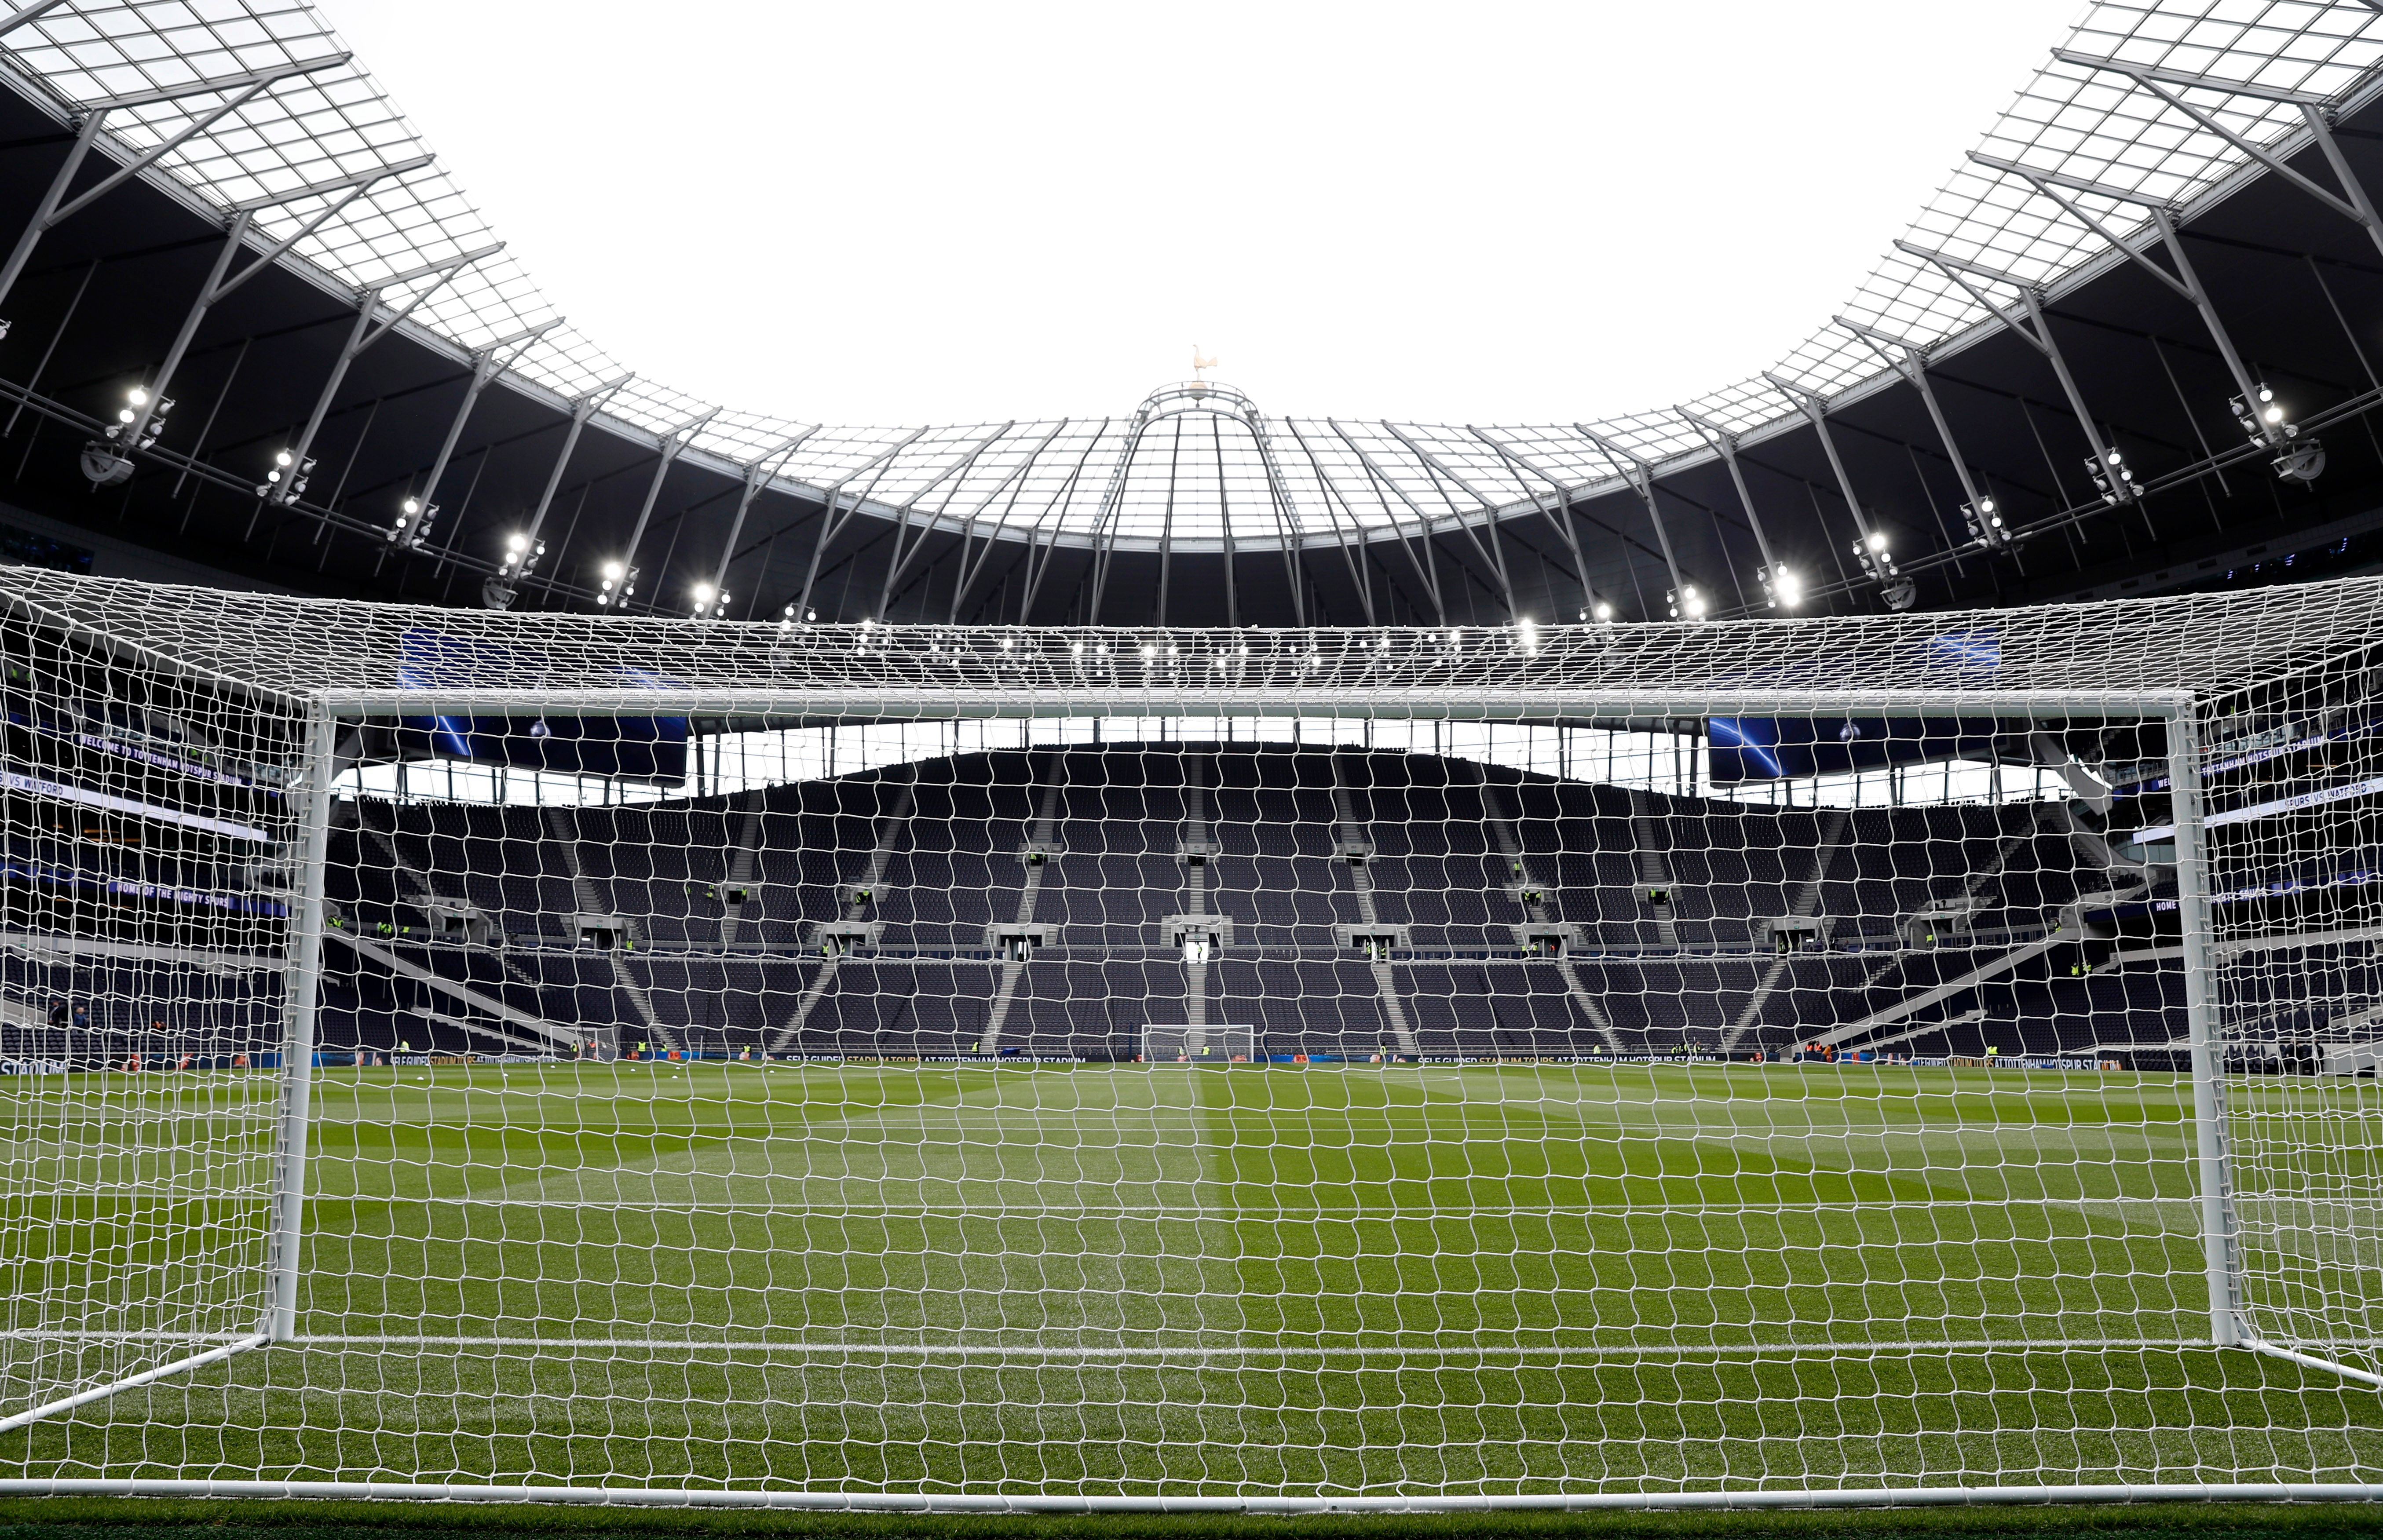 The Tottenham Hotspur Stadium.